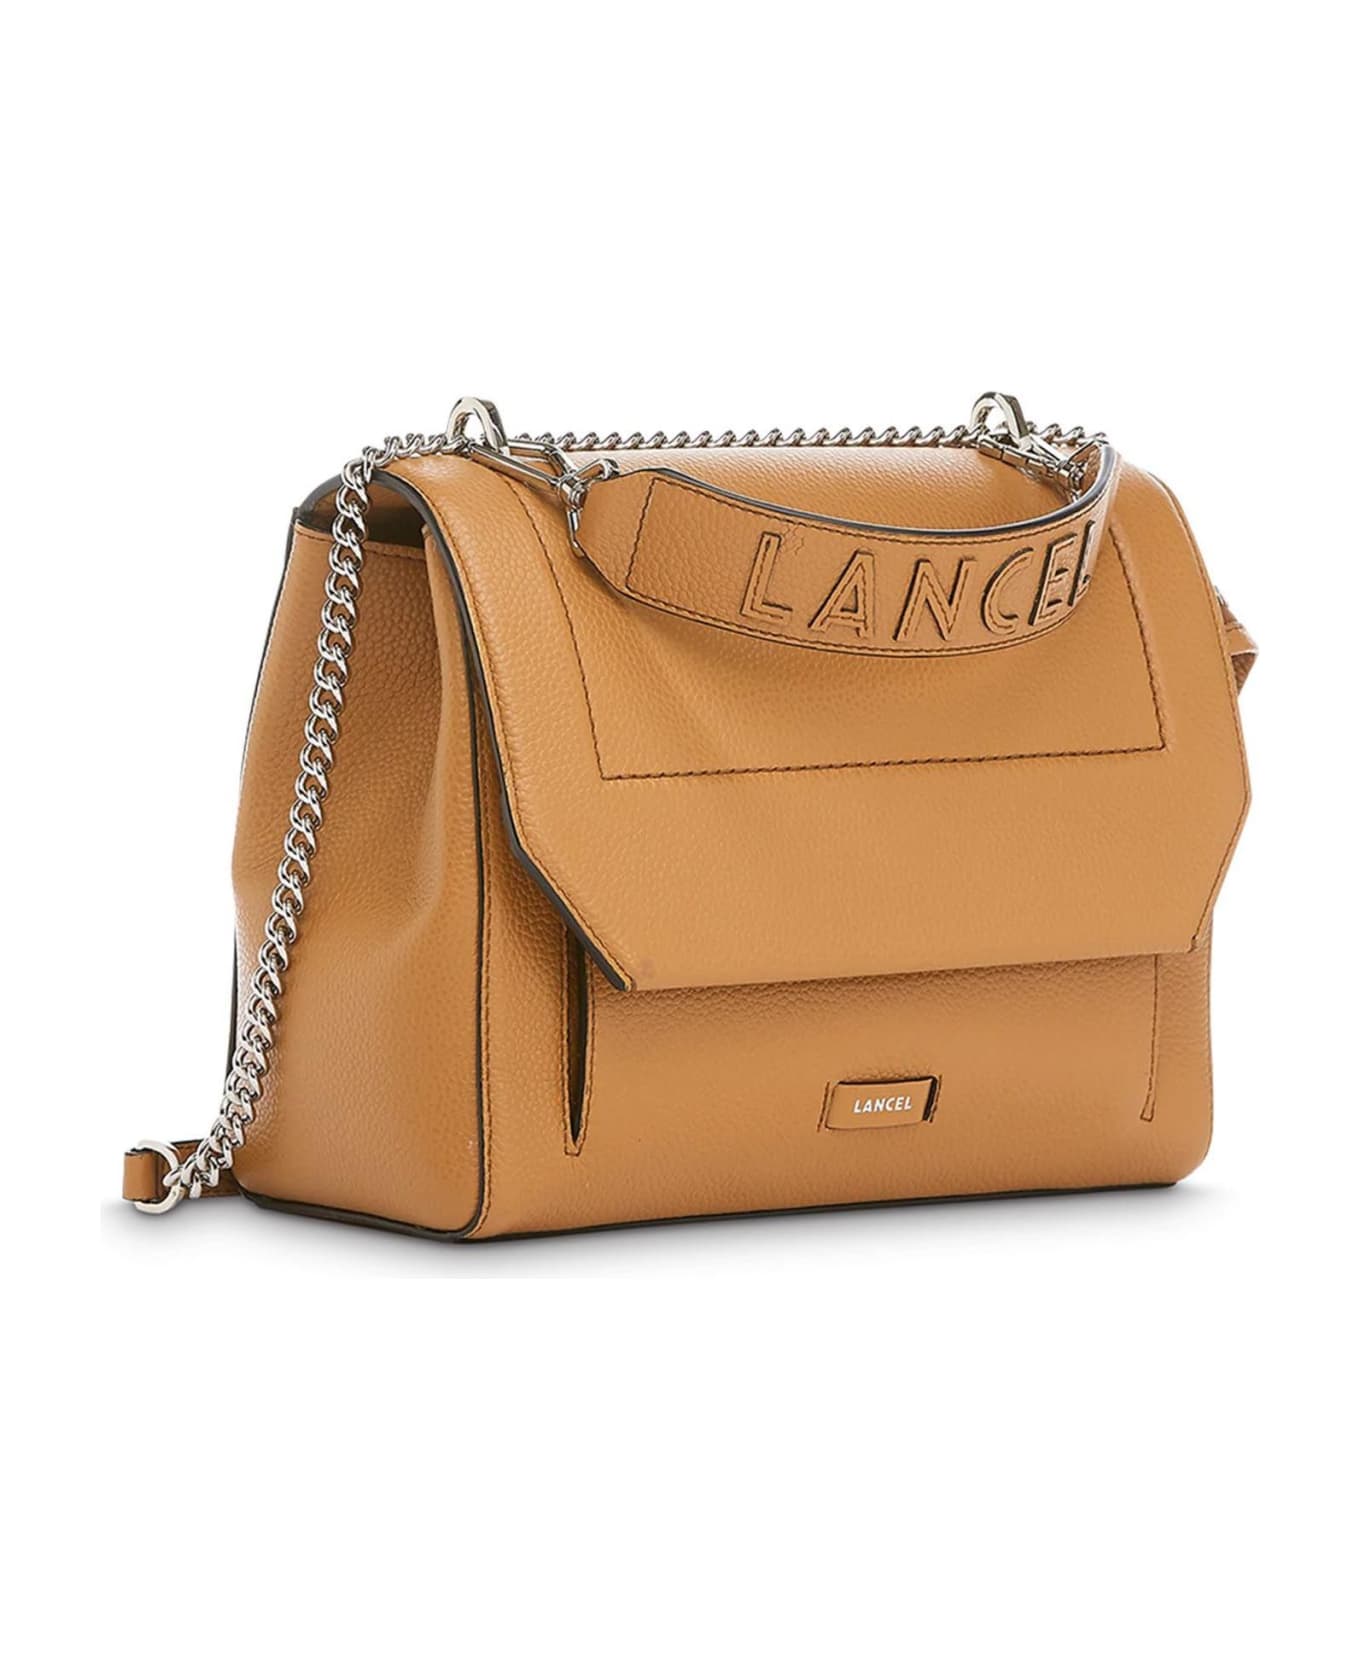 Lancel Camel Grained Leather Shoulder Bag - Beige